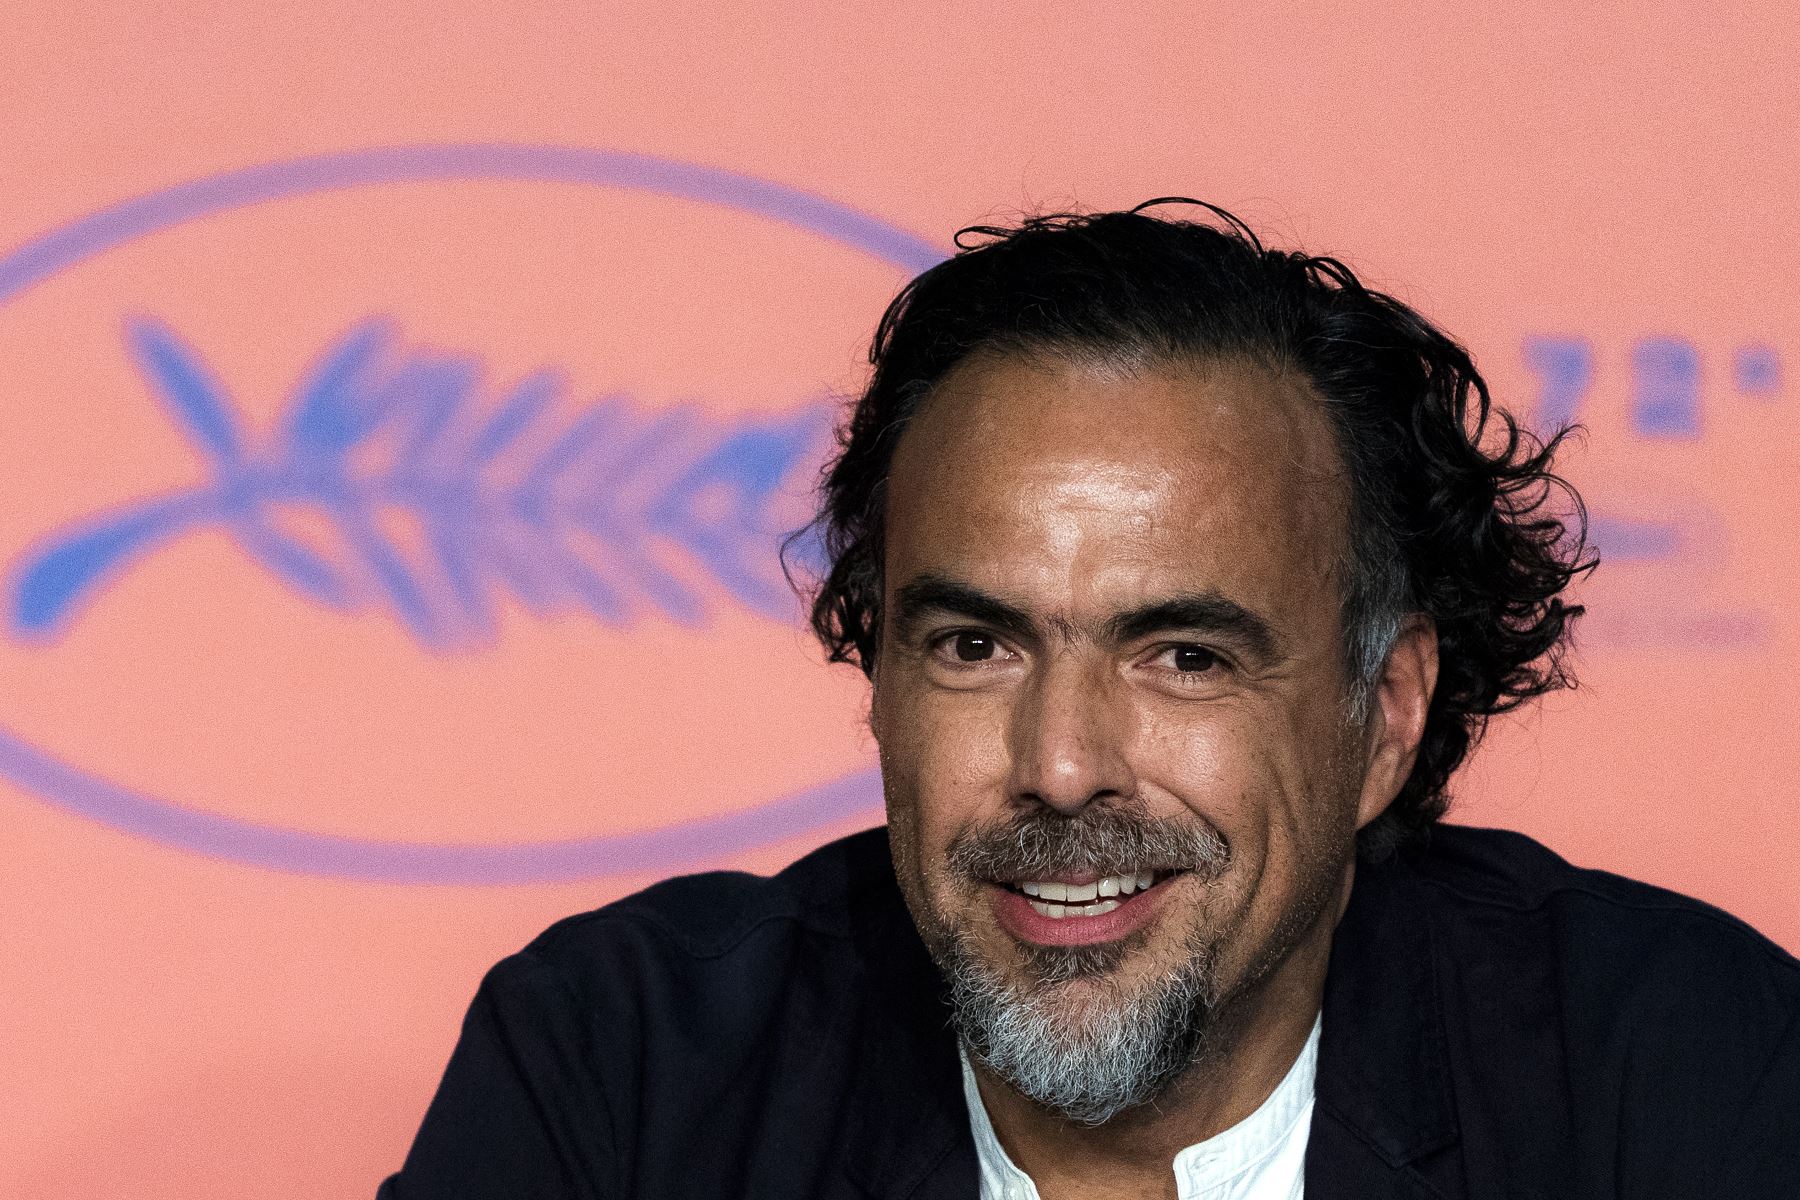 El cineasta, que marcó un hito en el cine mexicano con "Amores Perros" (2000), fue nombrado mejor director en el festival fde Cannes por "Babel" (2006) y ha ganado cuatro premios Óscar, tres por "Birdman" (2014) y uno por "The Revenant" (2015). Foto: AFP